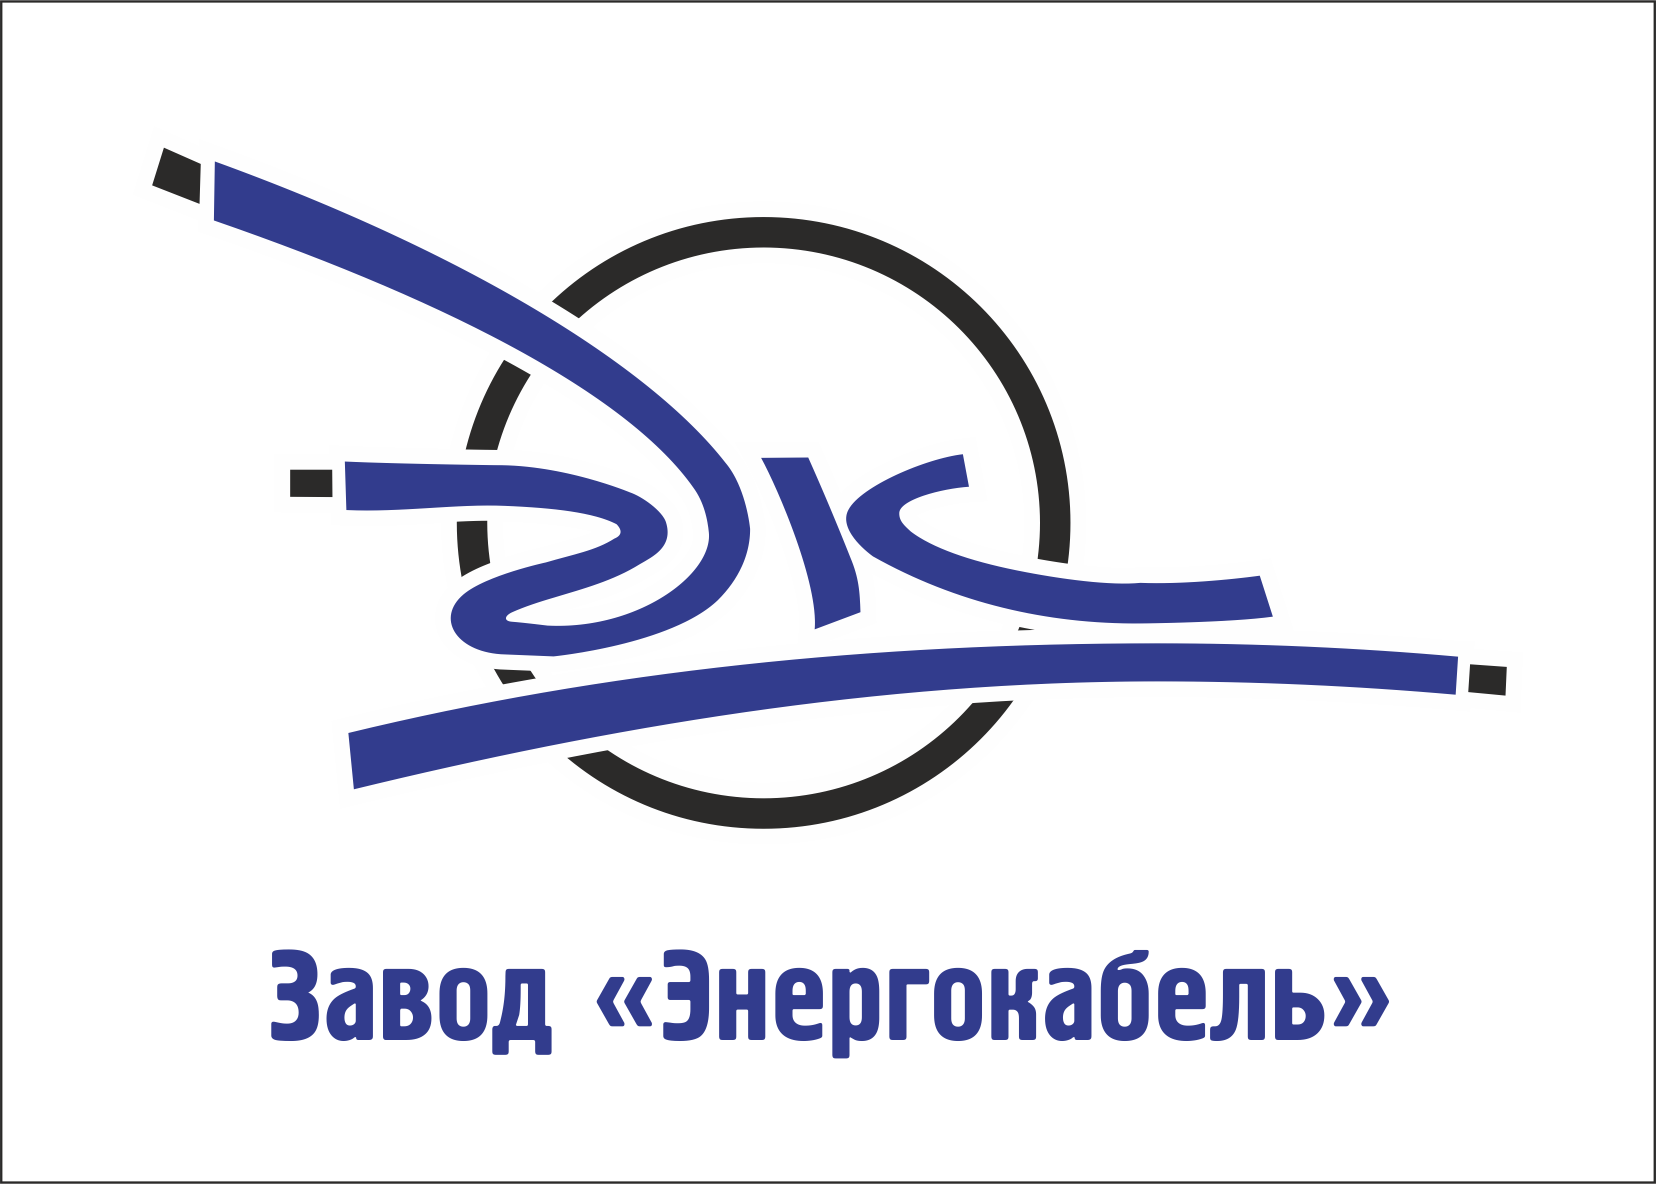 Энергокабель, Завод logotype